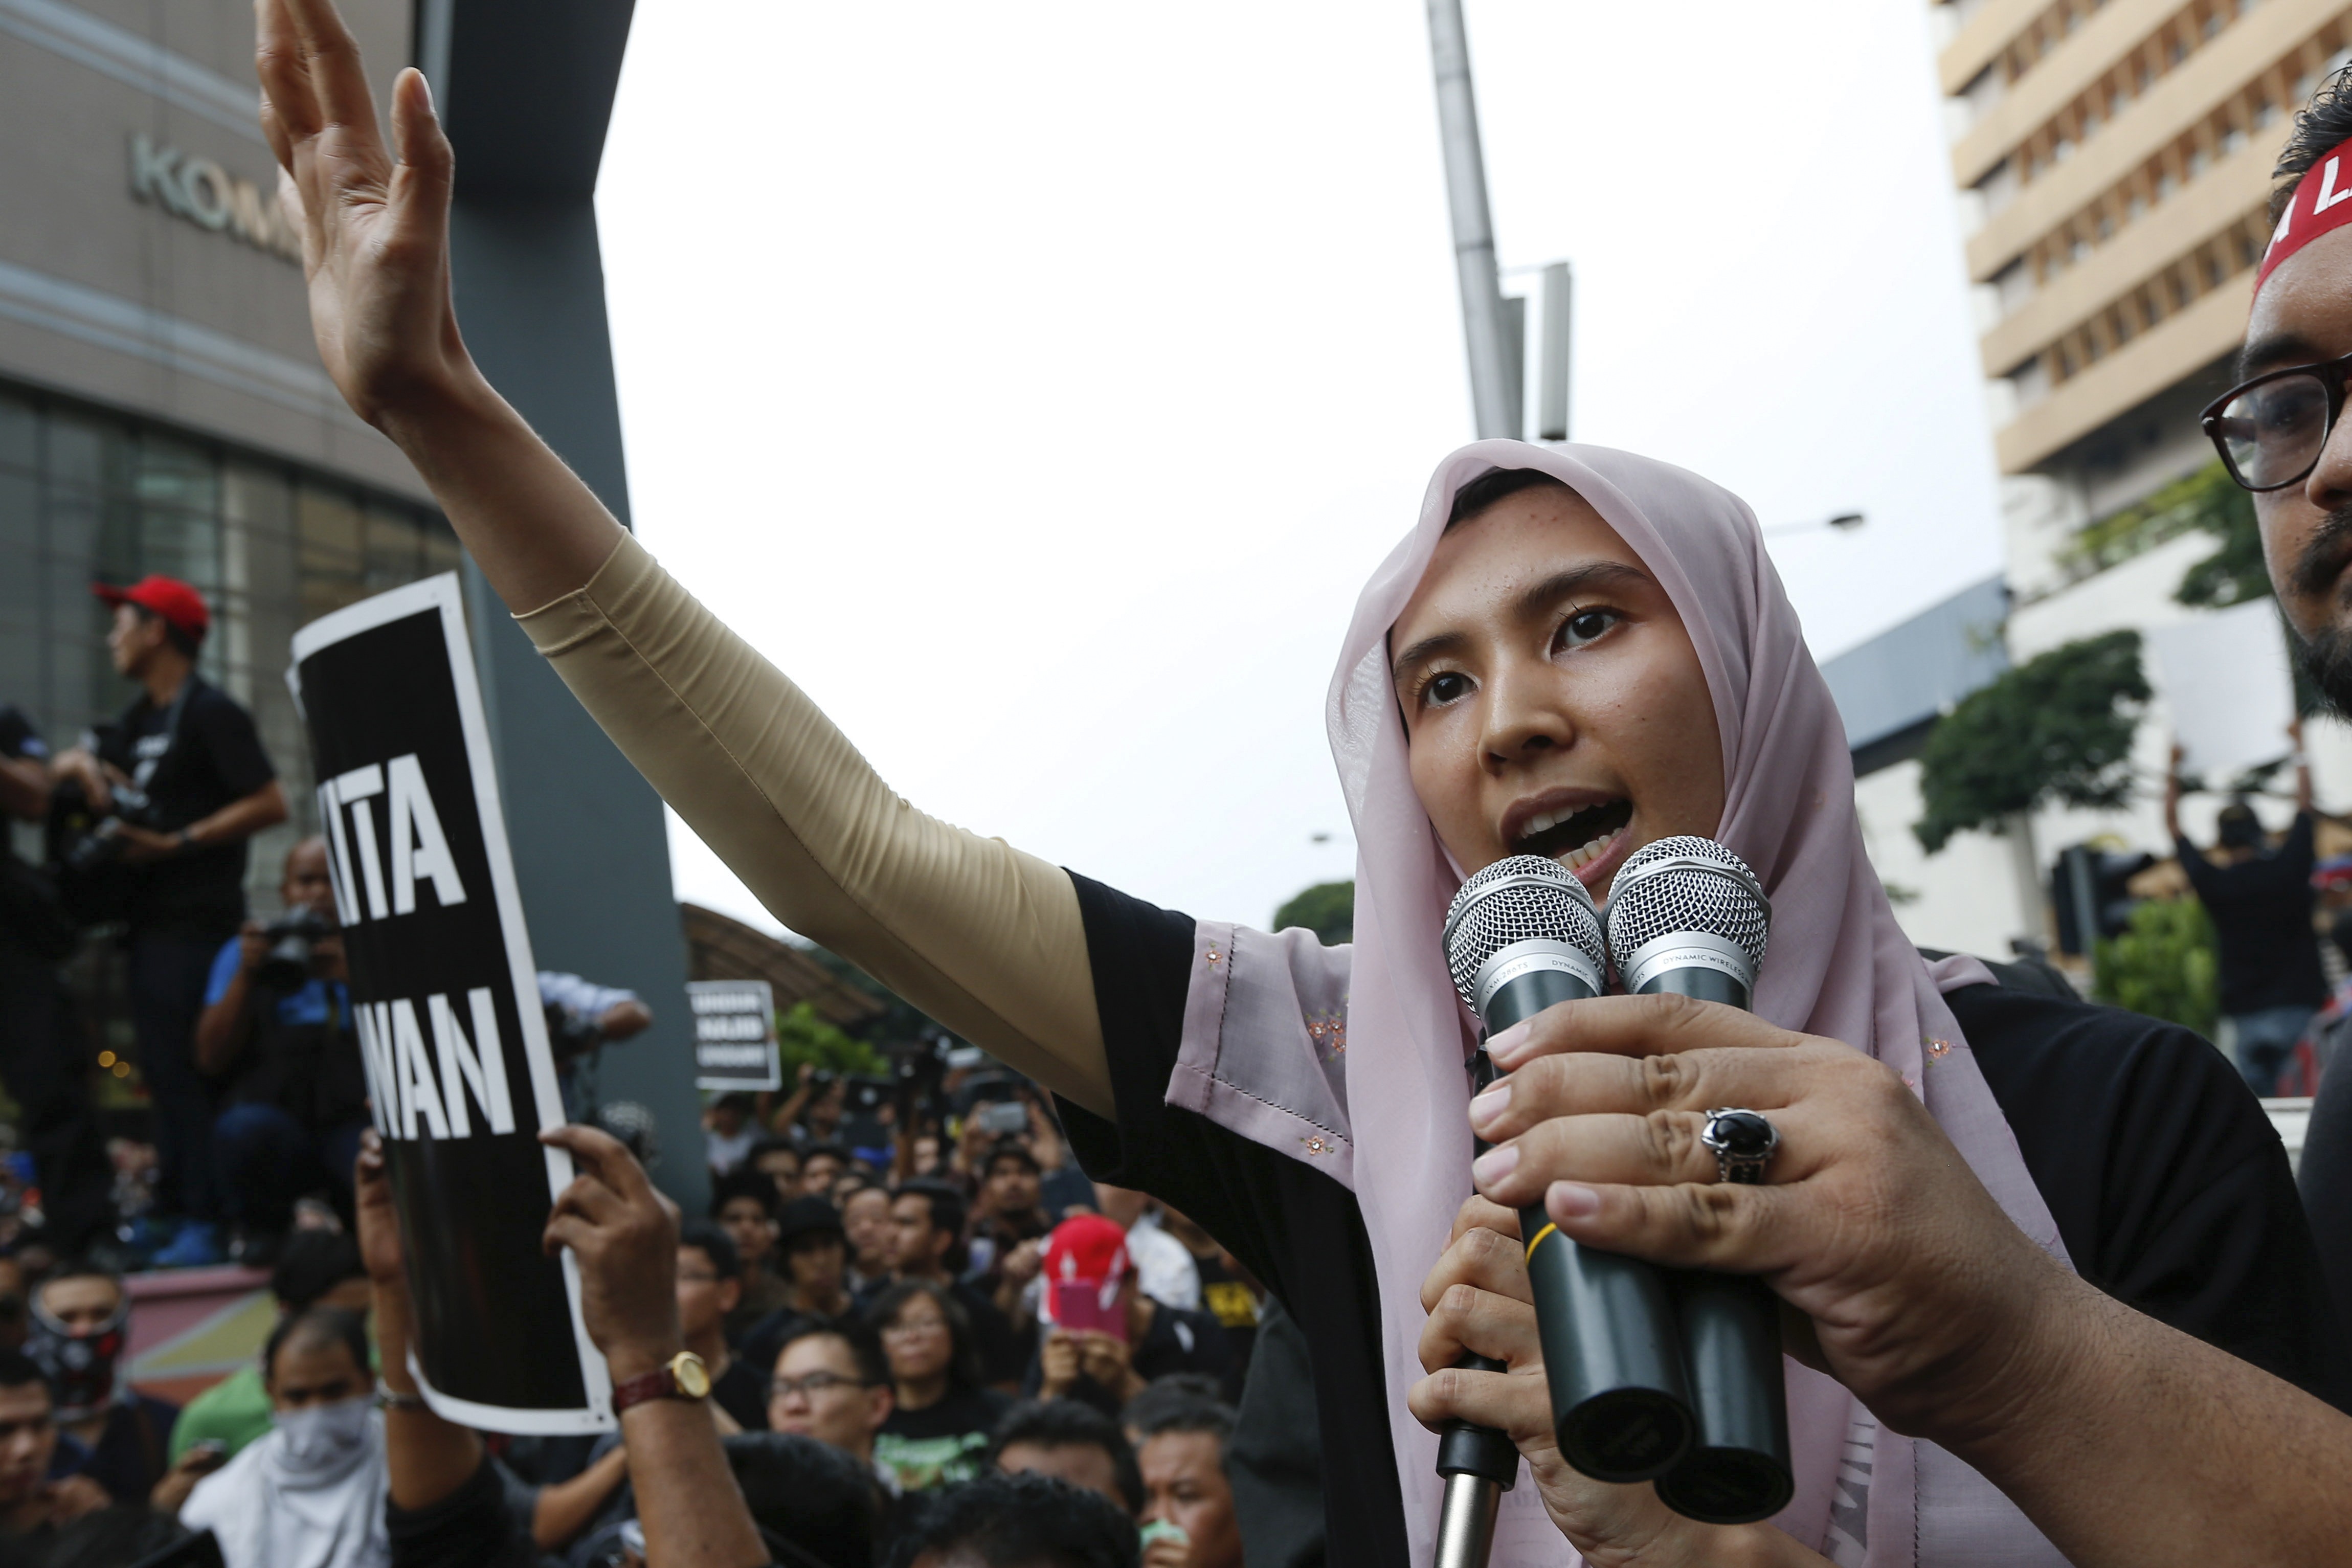 Nurul Izzah Anwar, Anwar Ibrahim’s daughter. Photo: AP